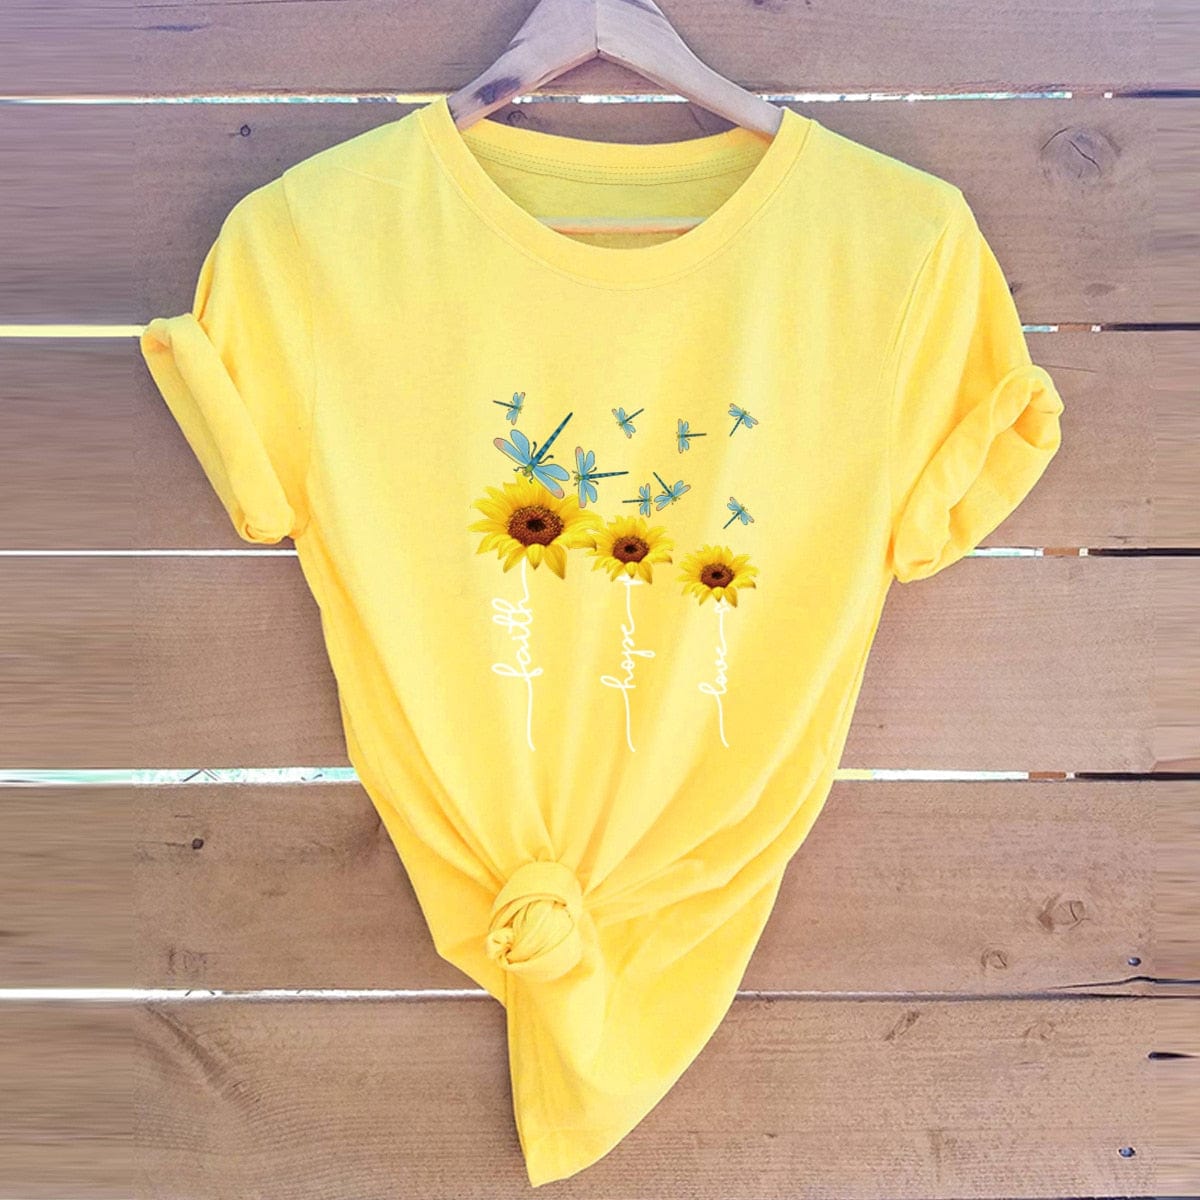 Buddhatrends F0522-Yellow / S Three Daisies Printed T-Shirt